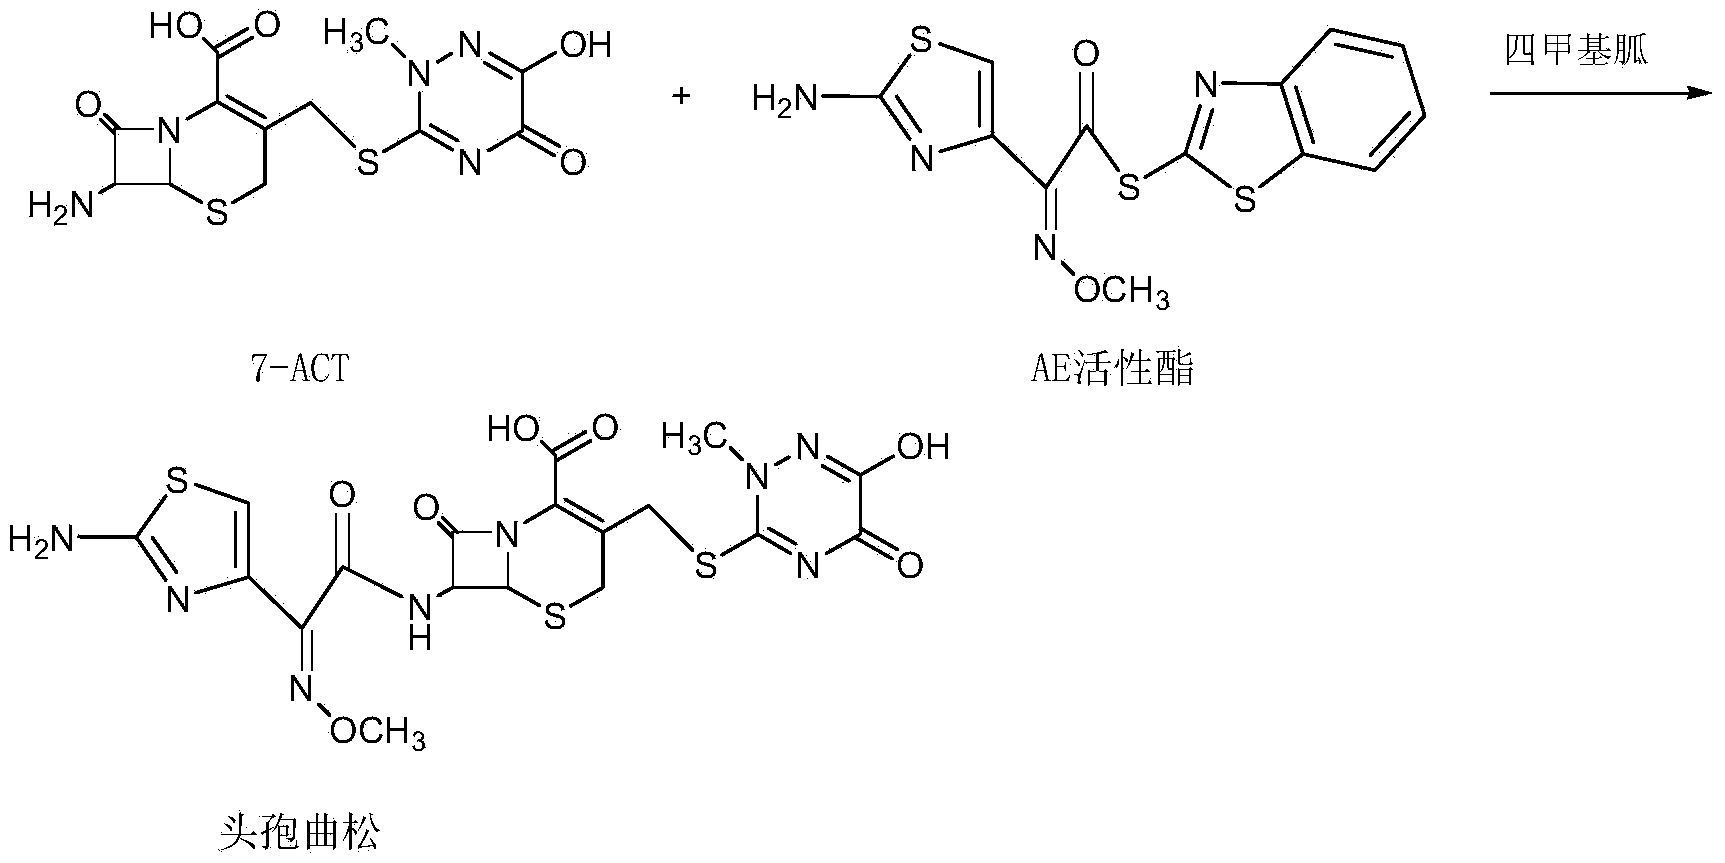 Method for synthesizing ceftriaxone sodium